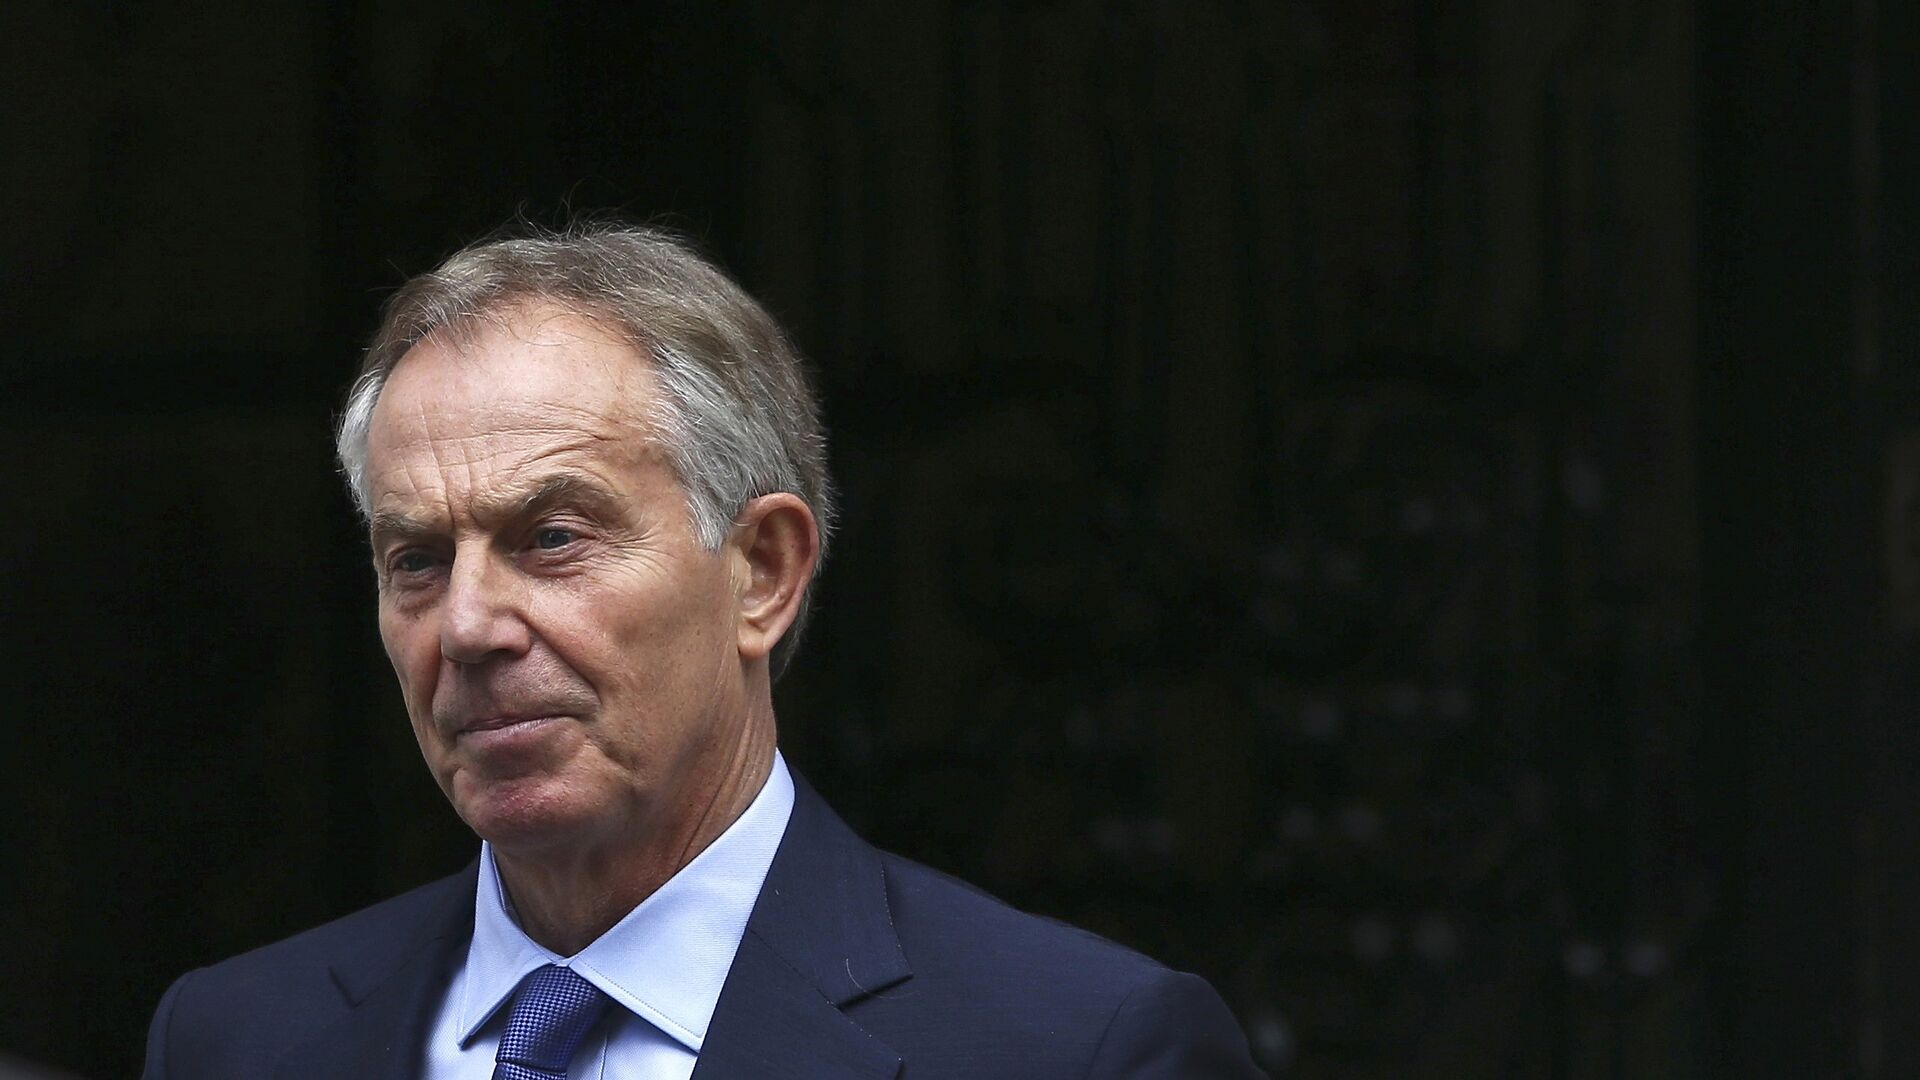 Tony Blair, ex primer ministro de Gran Bretaña - Sputnik Mundo, 1920, 23.08.2021